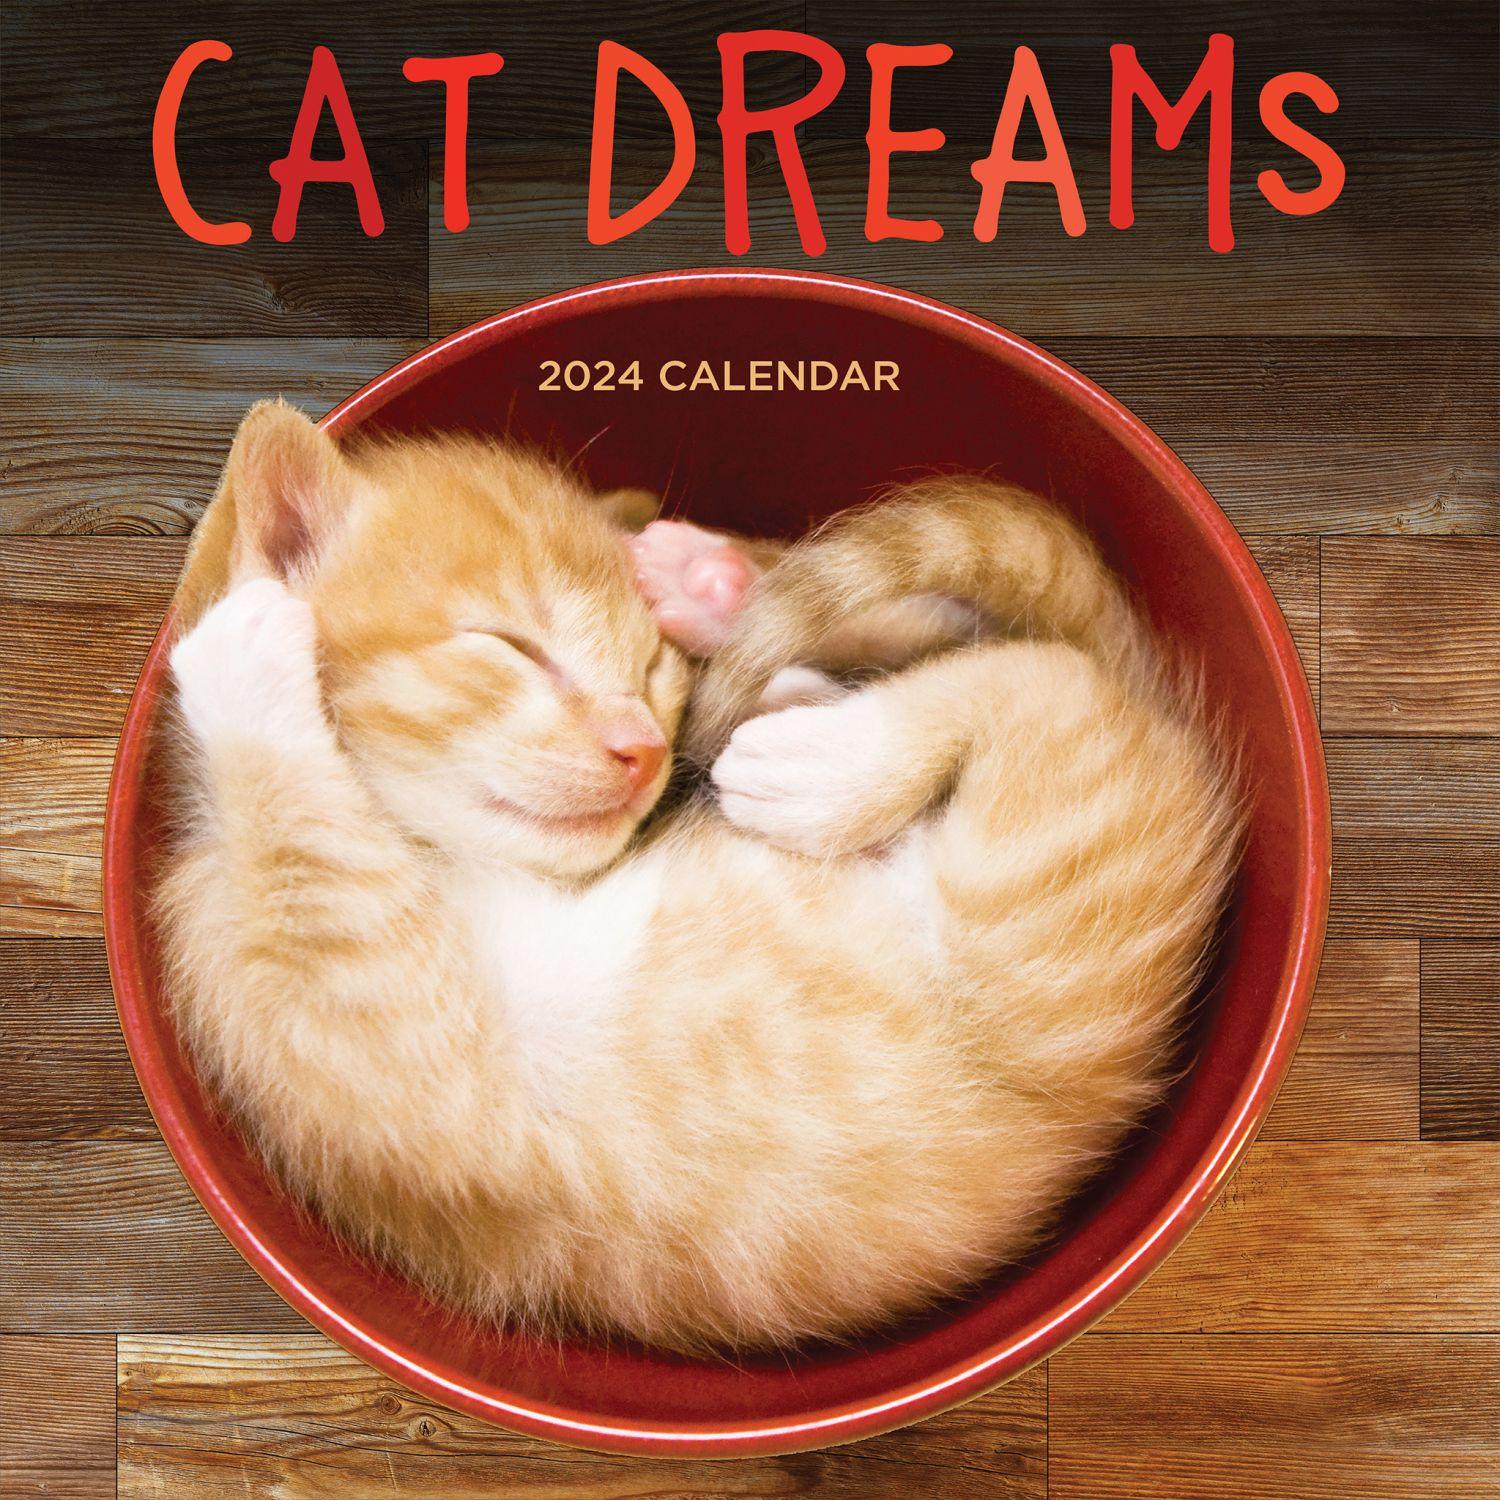 Cat Dreams 2024 Wall Calendar